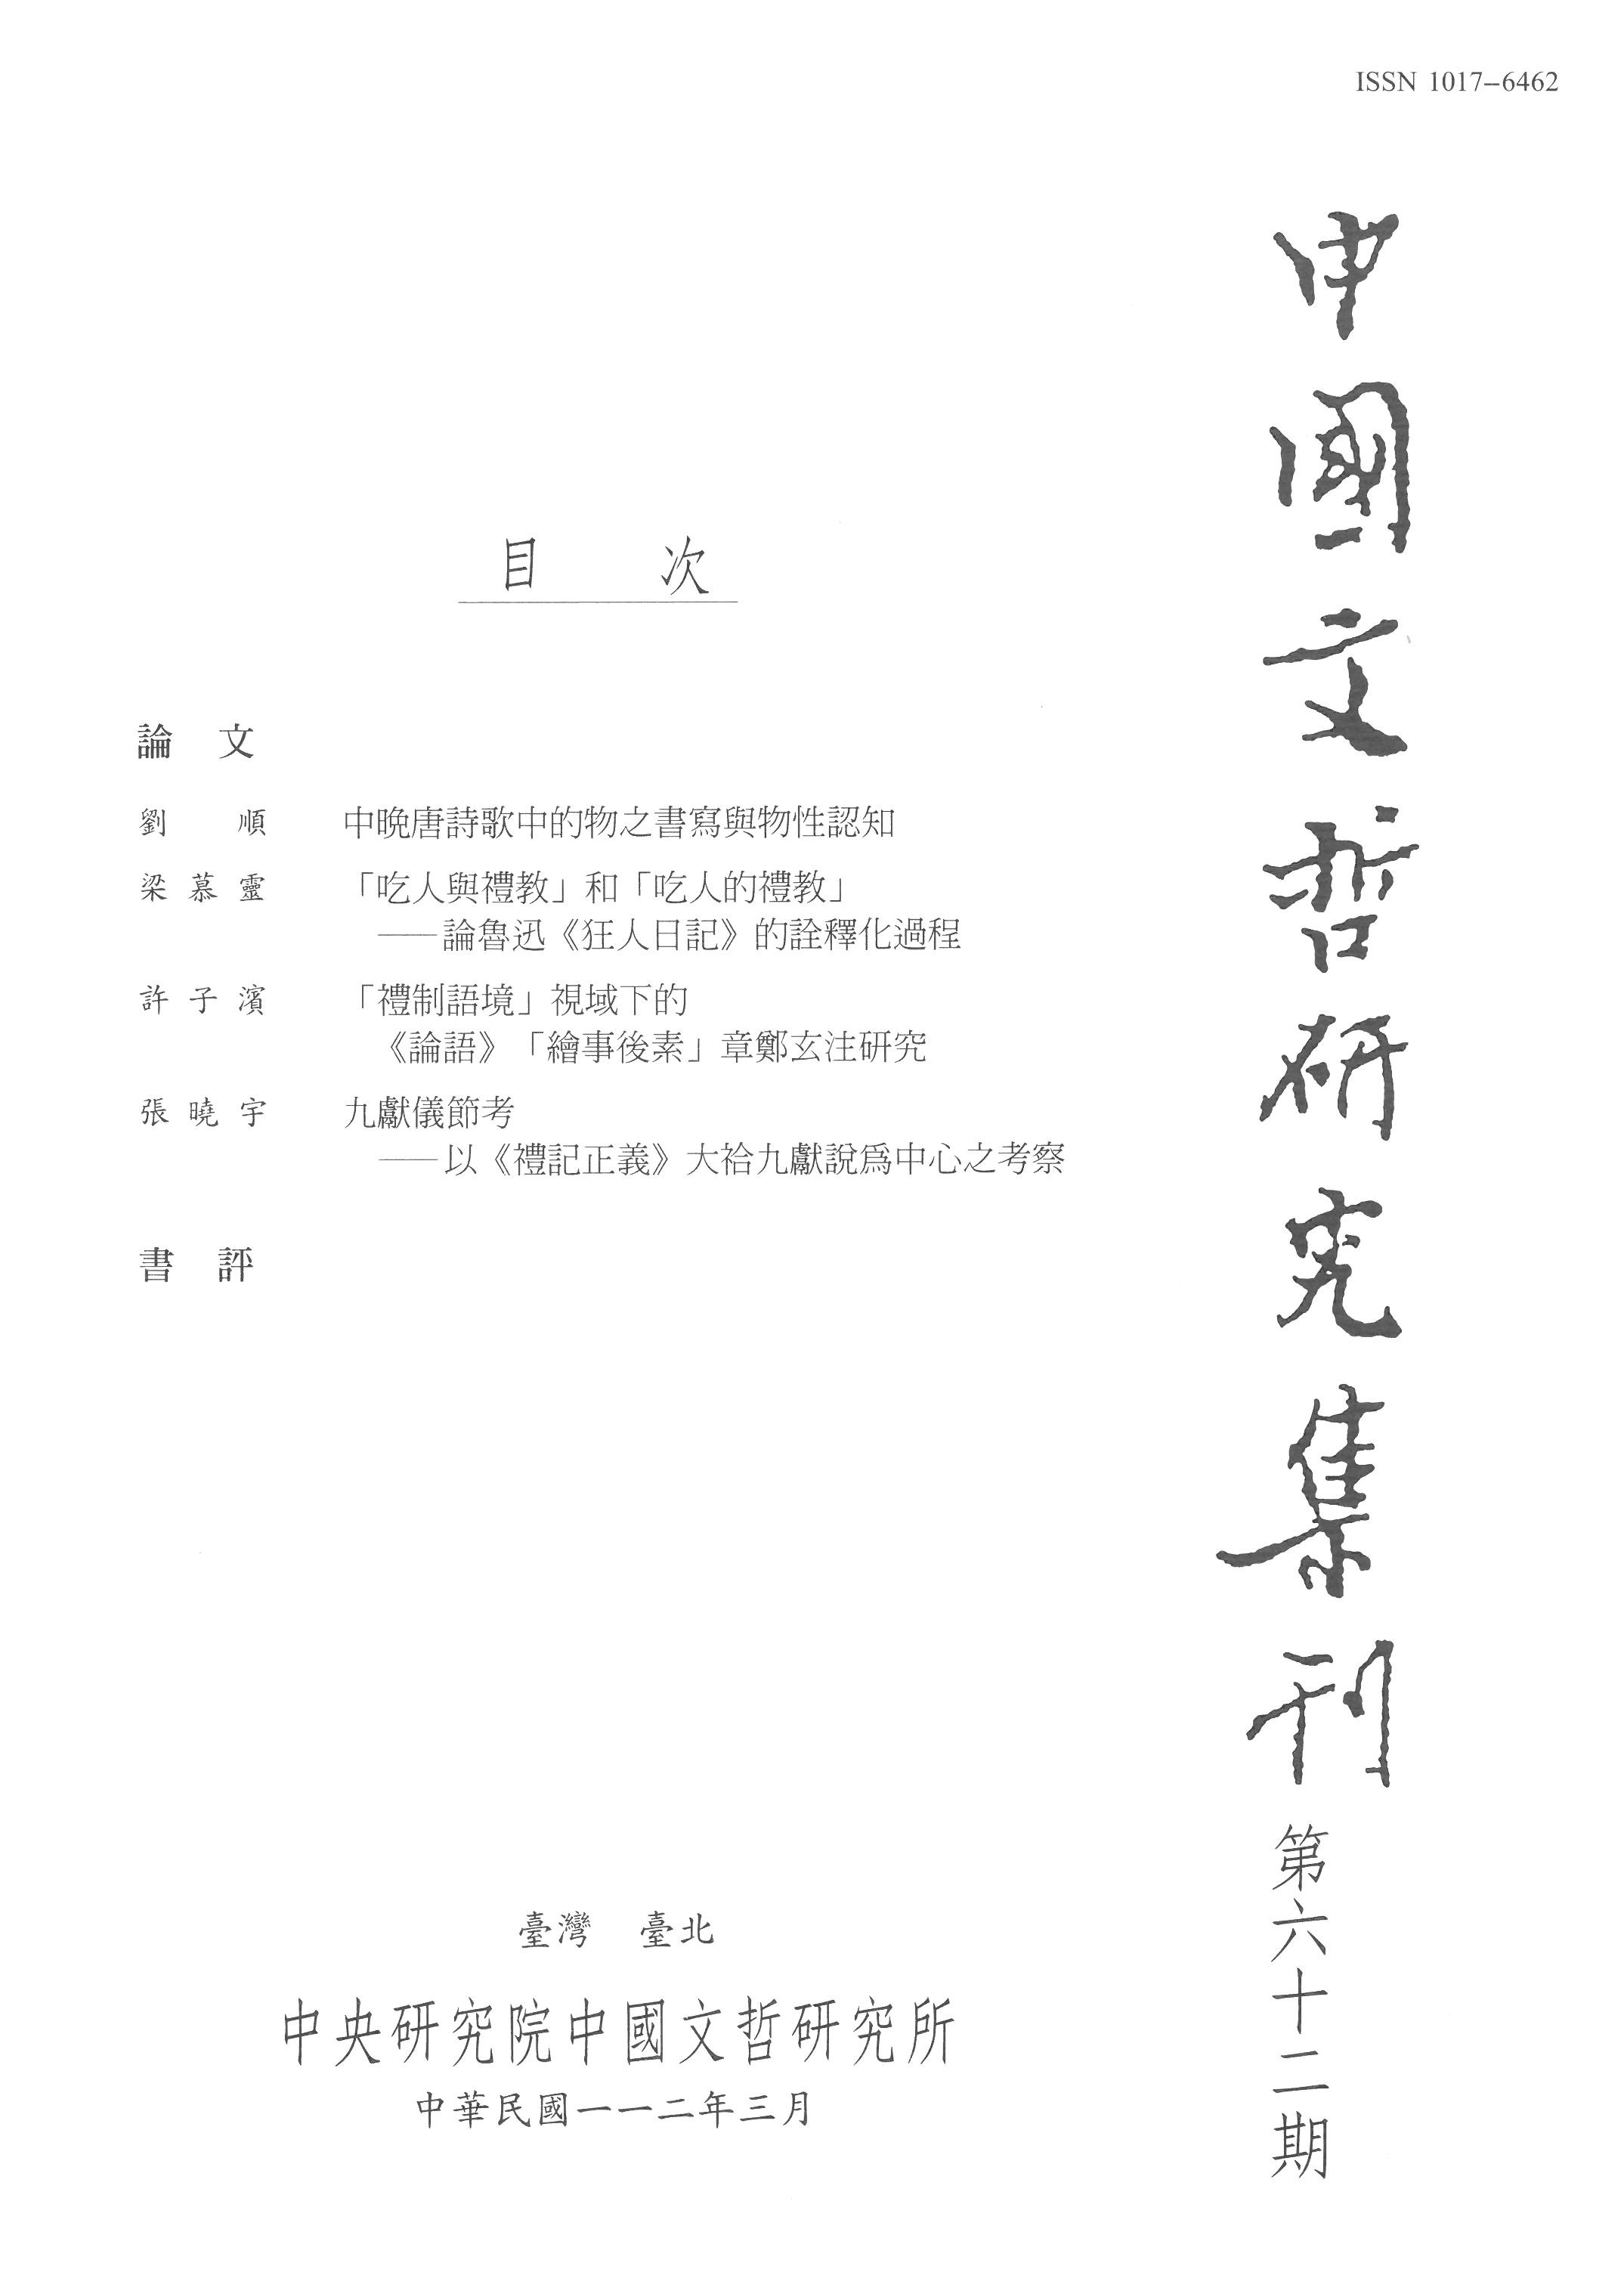 中國文哲硏究通訊 = Newsletter of the Institute of Chinese Literature and Philosophy, Academia Sinica